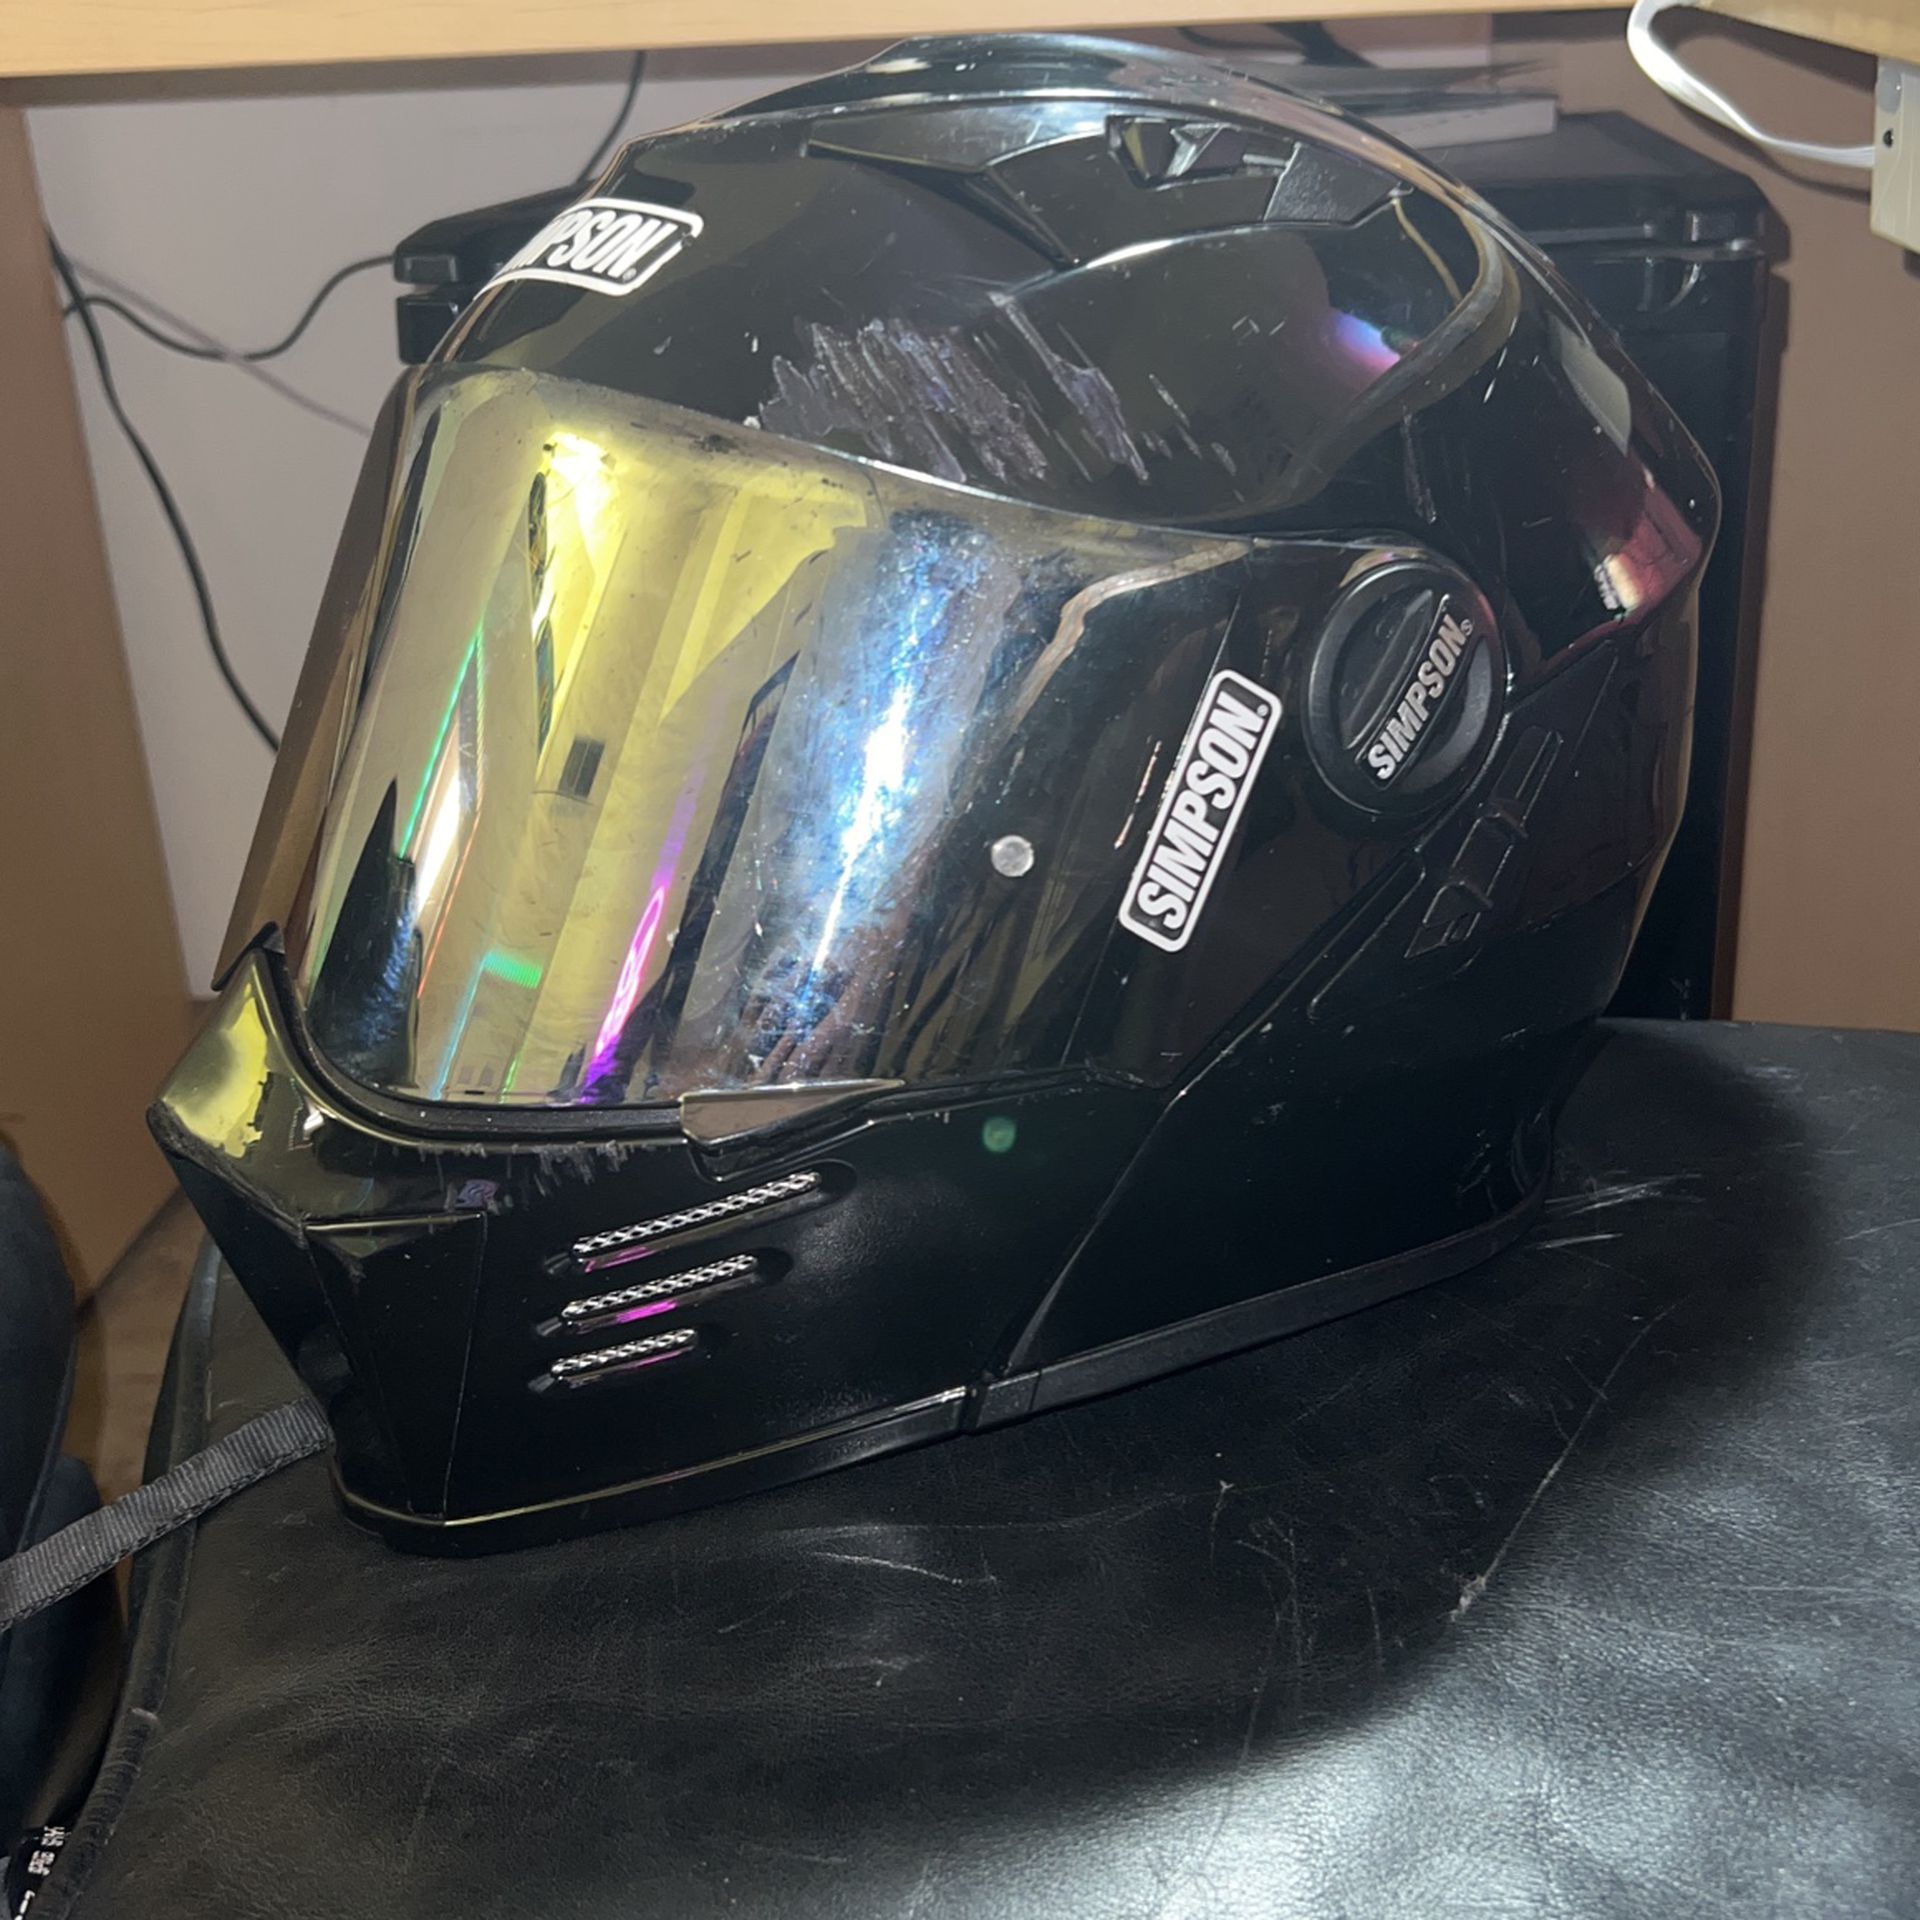 Simpson Xxl Mod Bandit Carbon Fiber Motorcycle Helmet